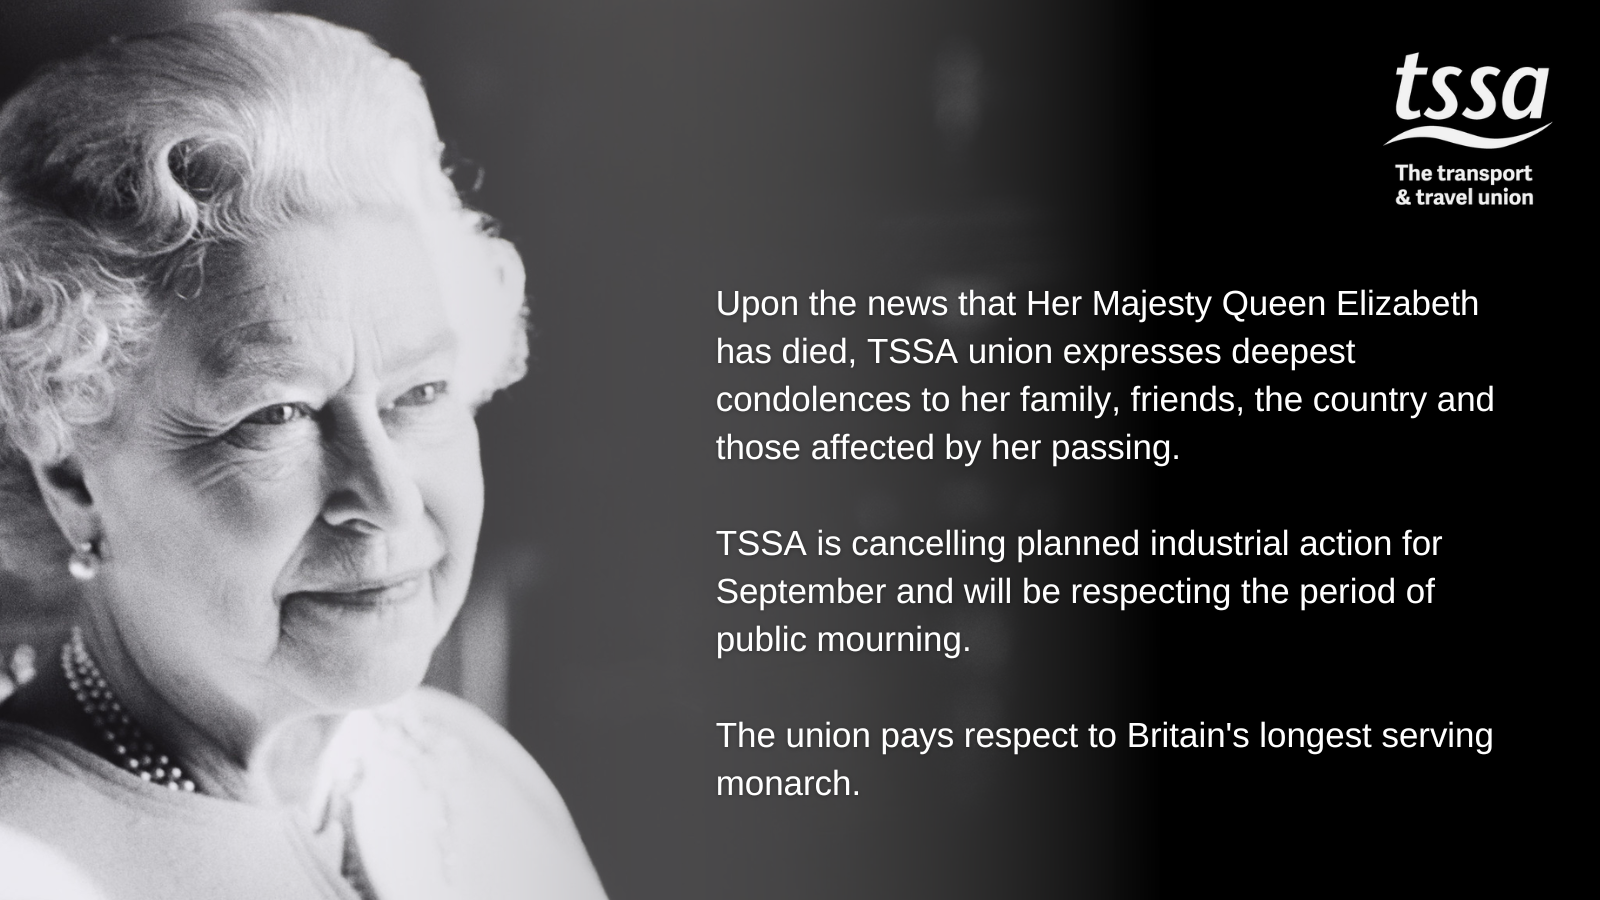 TSSA statement on HRH Queen Elizabeth